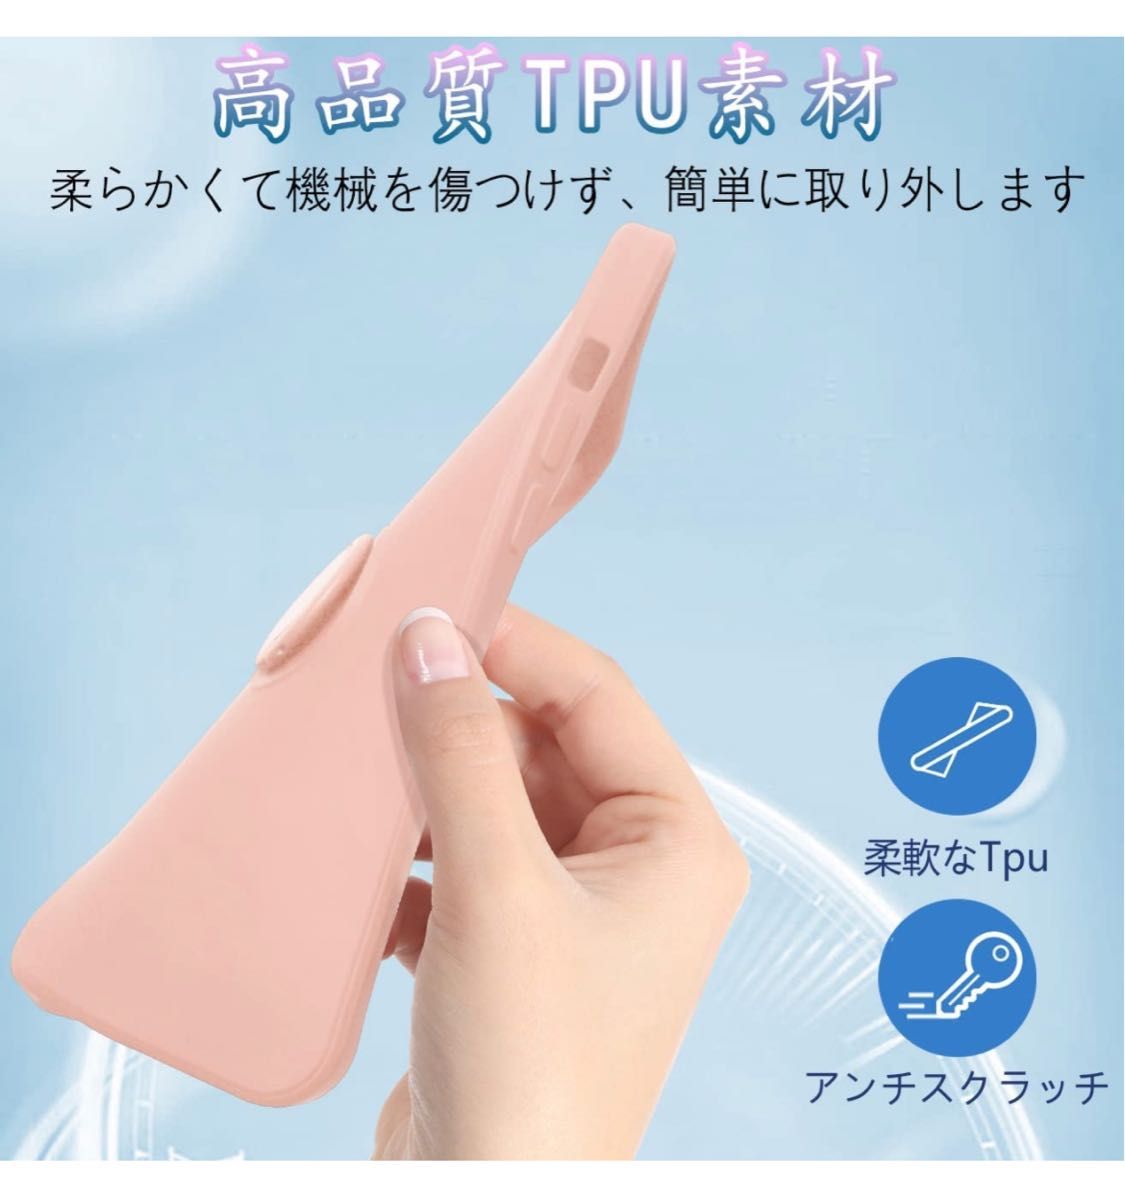 iPhone 12 pro ケース リング 耐衝撃 リング付き ピンク 一体型 携帯カバー 指紋防止 360°回転 スタンド機能